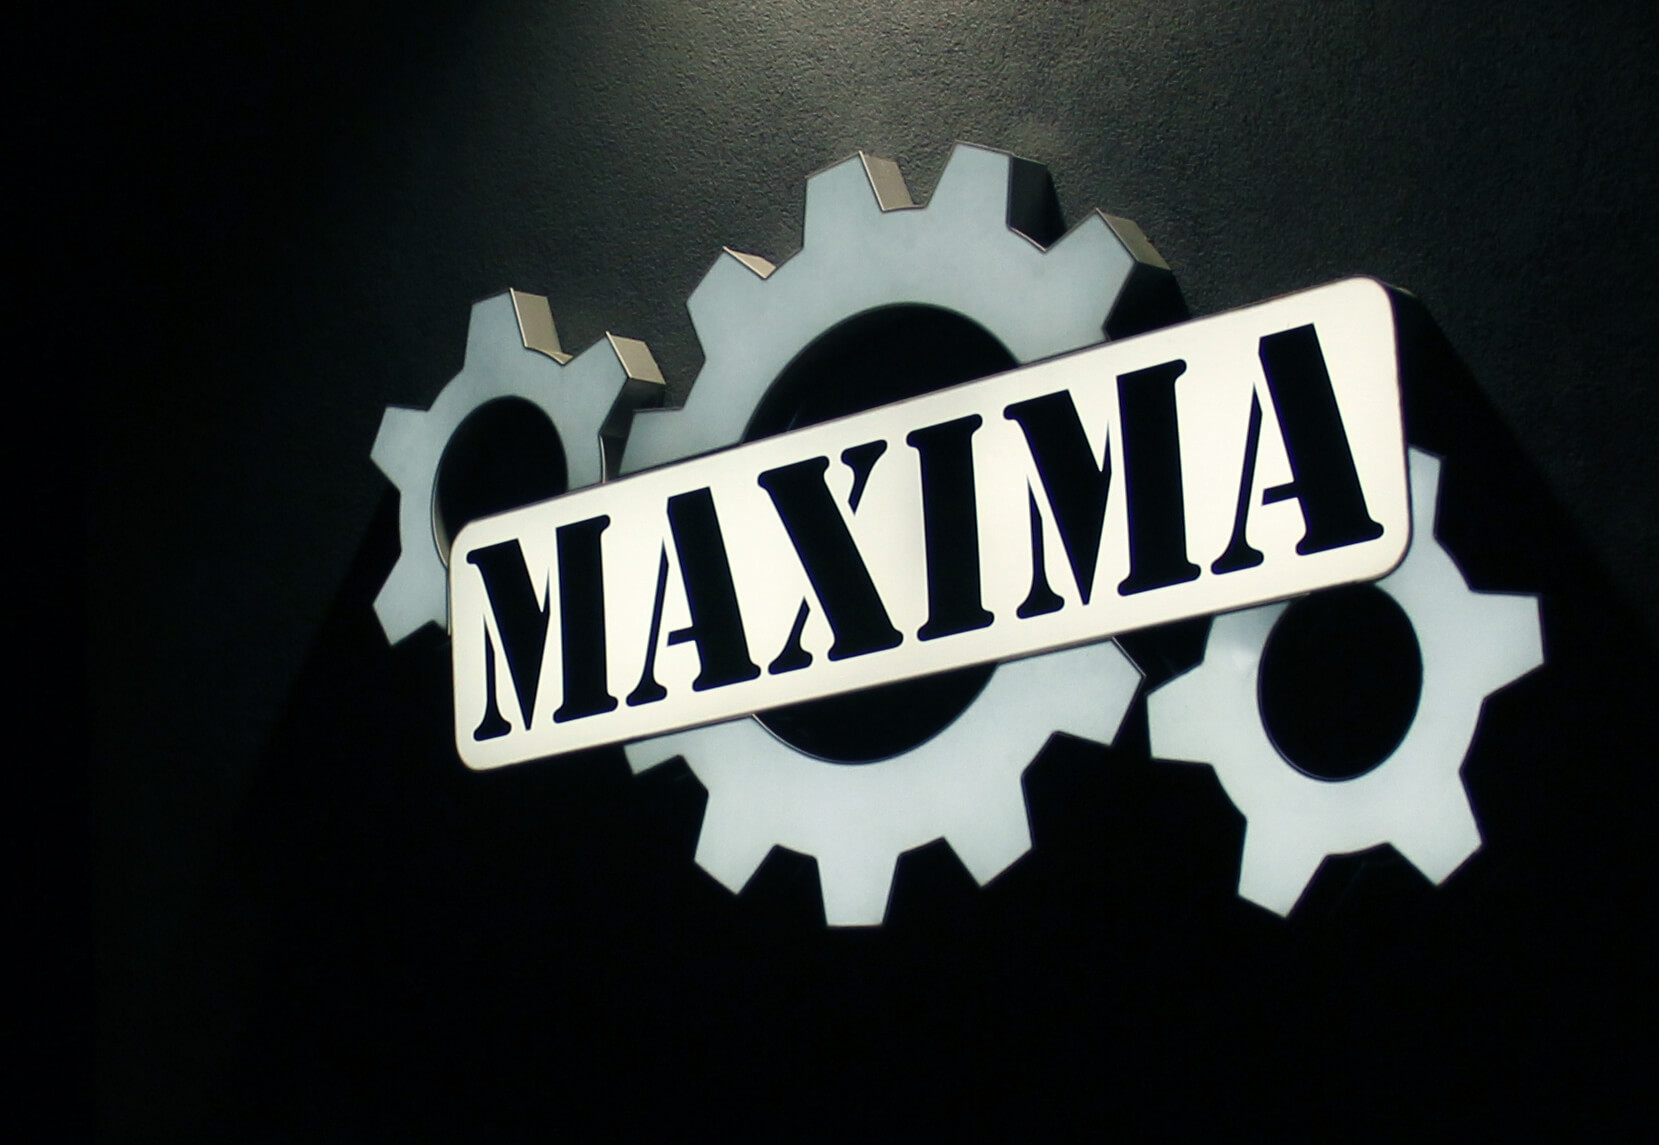 Maxima - Maxima - led panel on the wall with company's logo, made of plexiglass